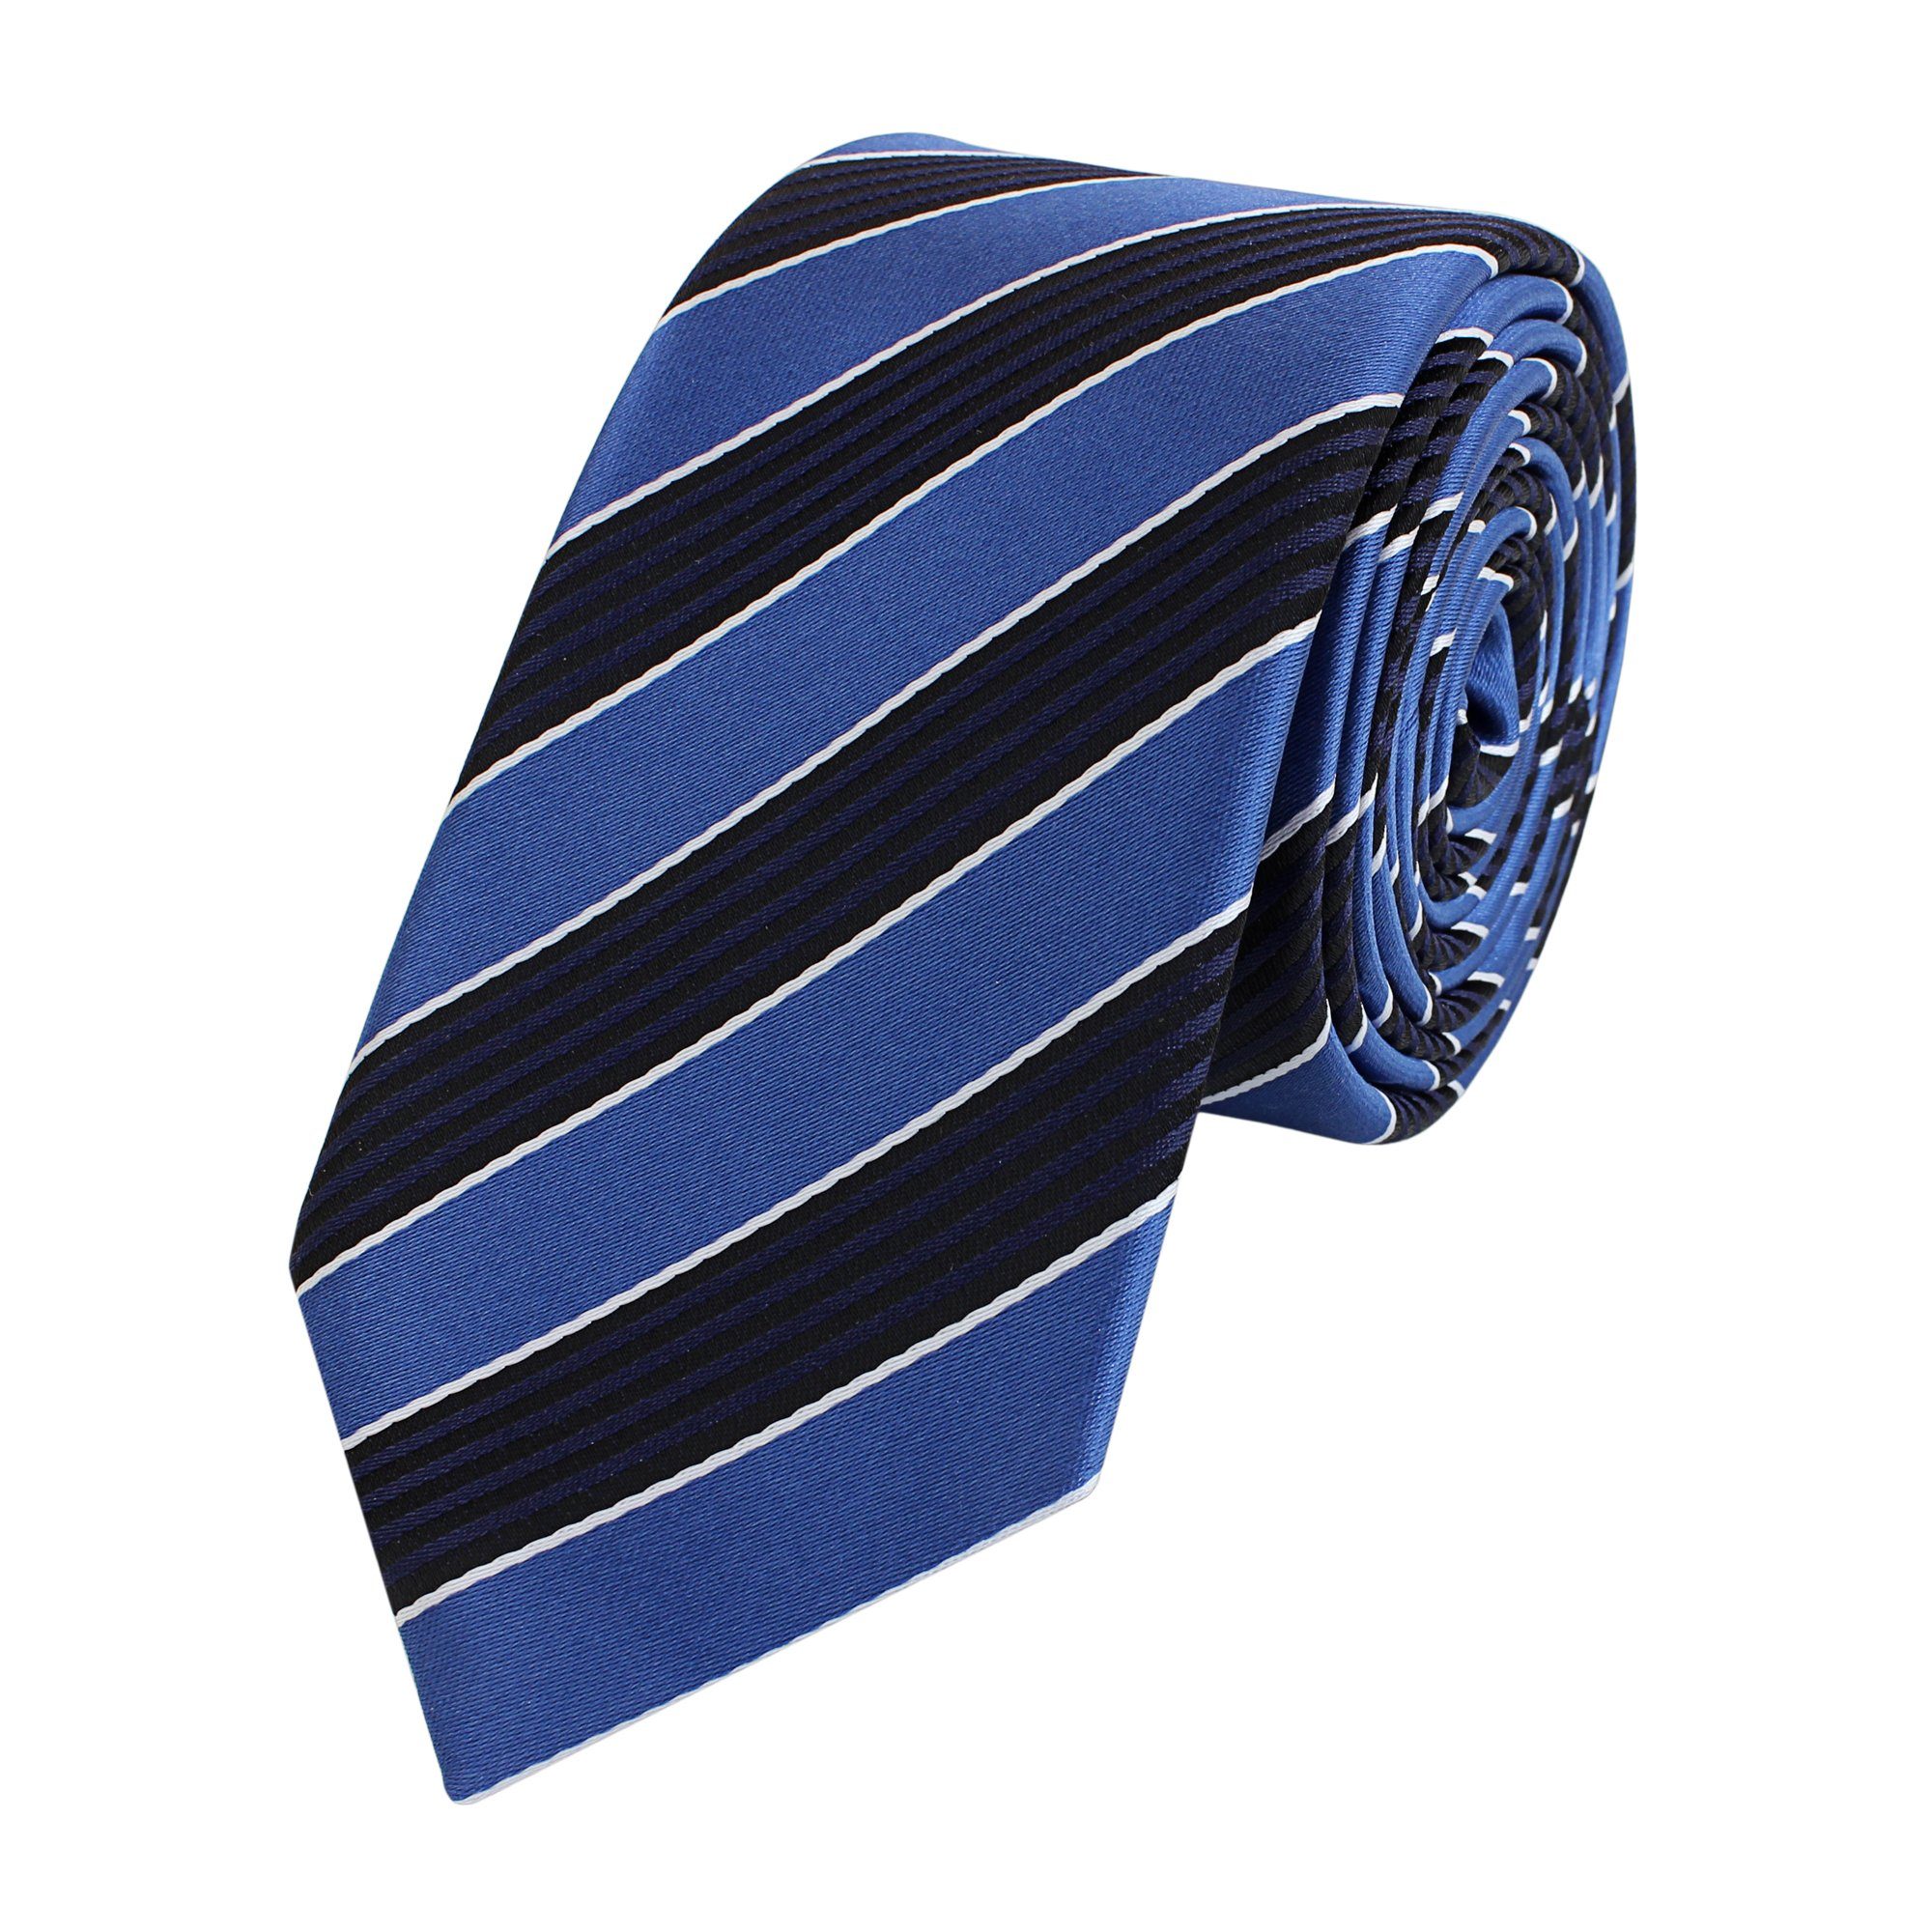 Fabio Farini Bleu/Noir/Blanc (6cm), (ohne Striefen Box, Cordon Blautöne Herren - Männer verschiedene - Gestreift) 6cm Krawatte Blaue Krawatte Schmal Schwarz Blau Schlips in